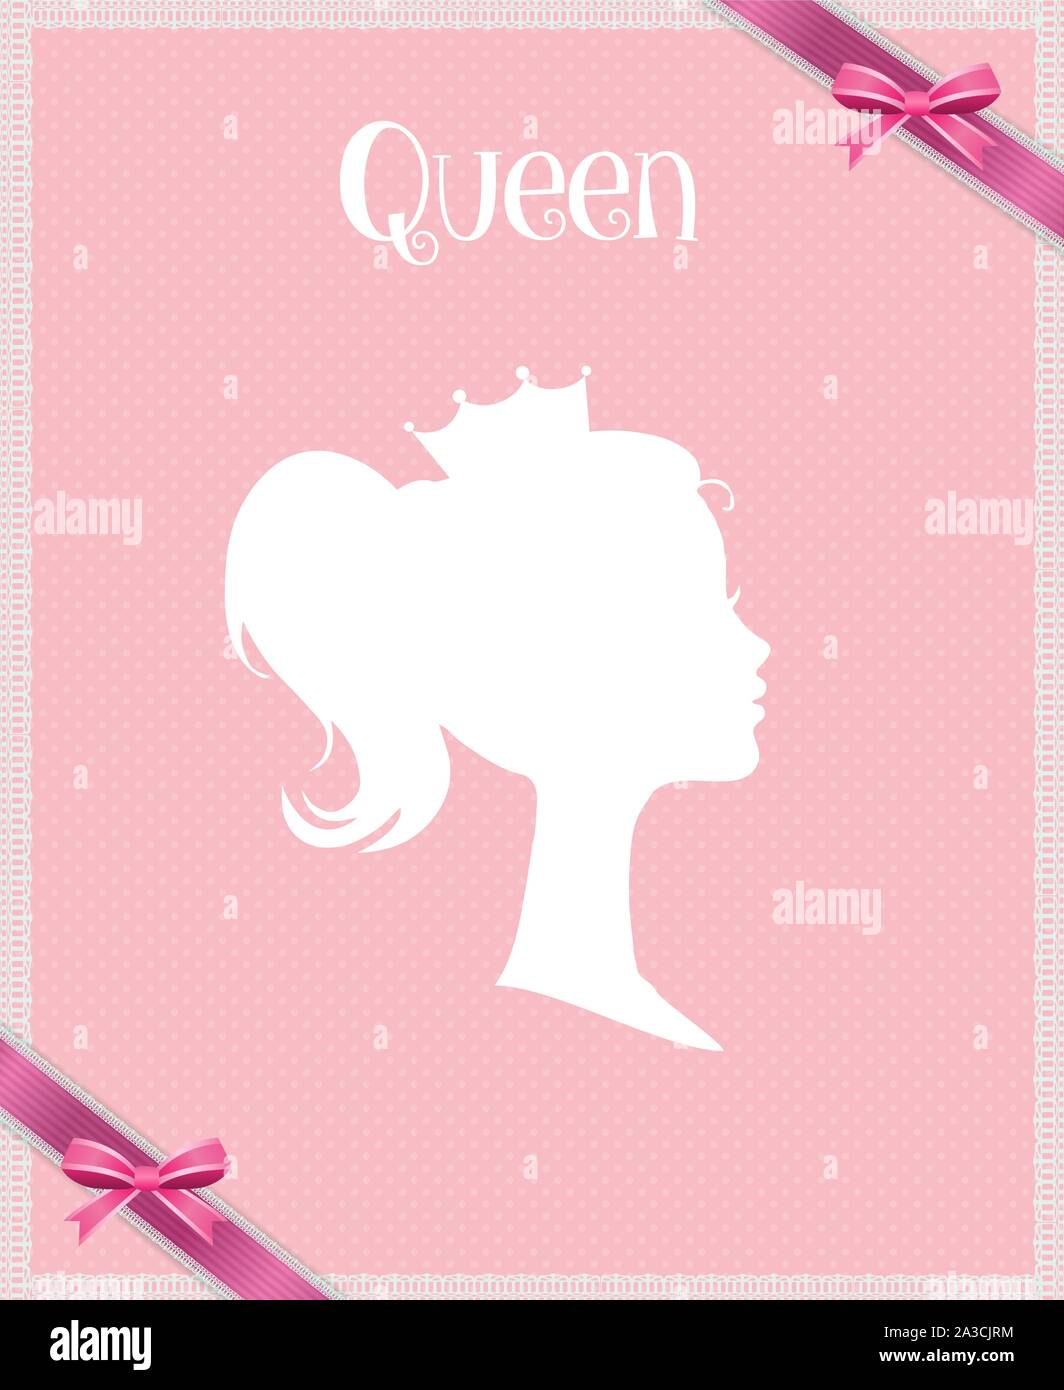 La principessa o Regina Profilo con corona su sfondo rosa con nastro, biglietto di auguri, Vittoriano ritratto della persona reale, Cute girl in Tiara Illustrazione Vettoriale